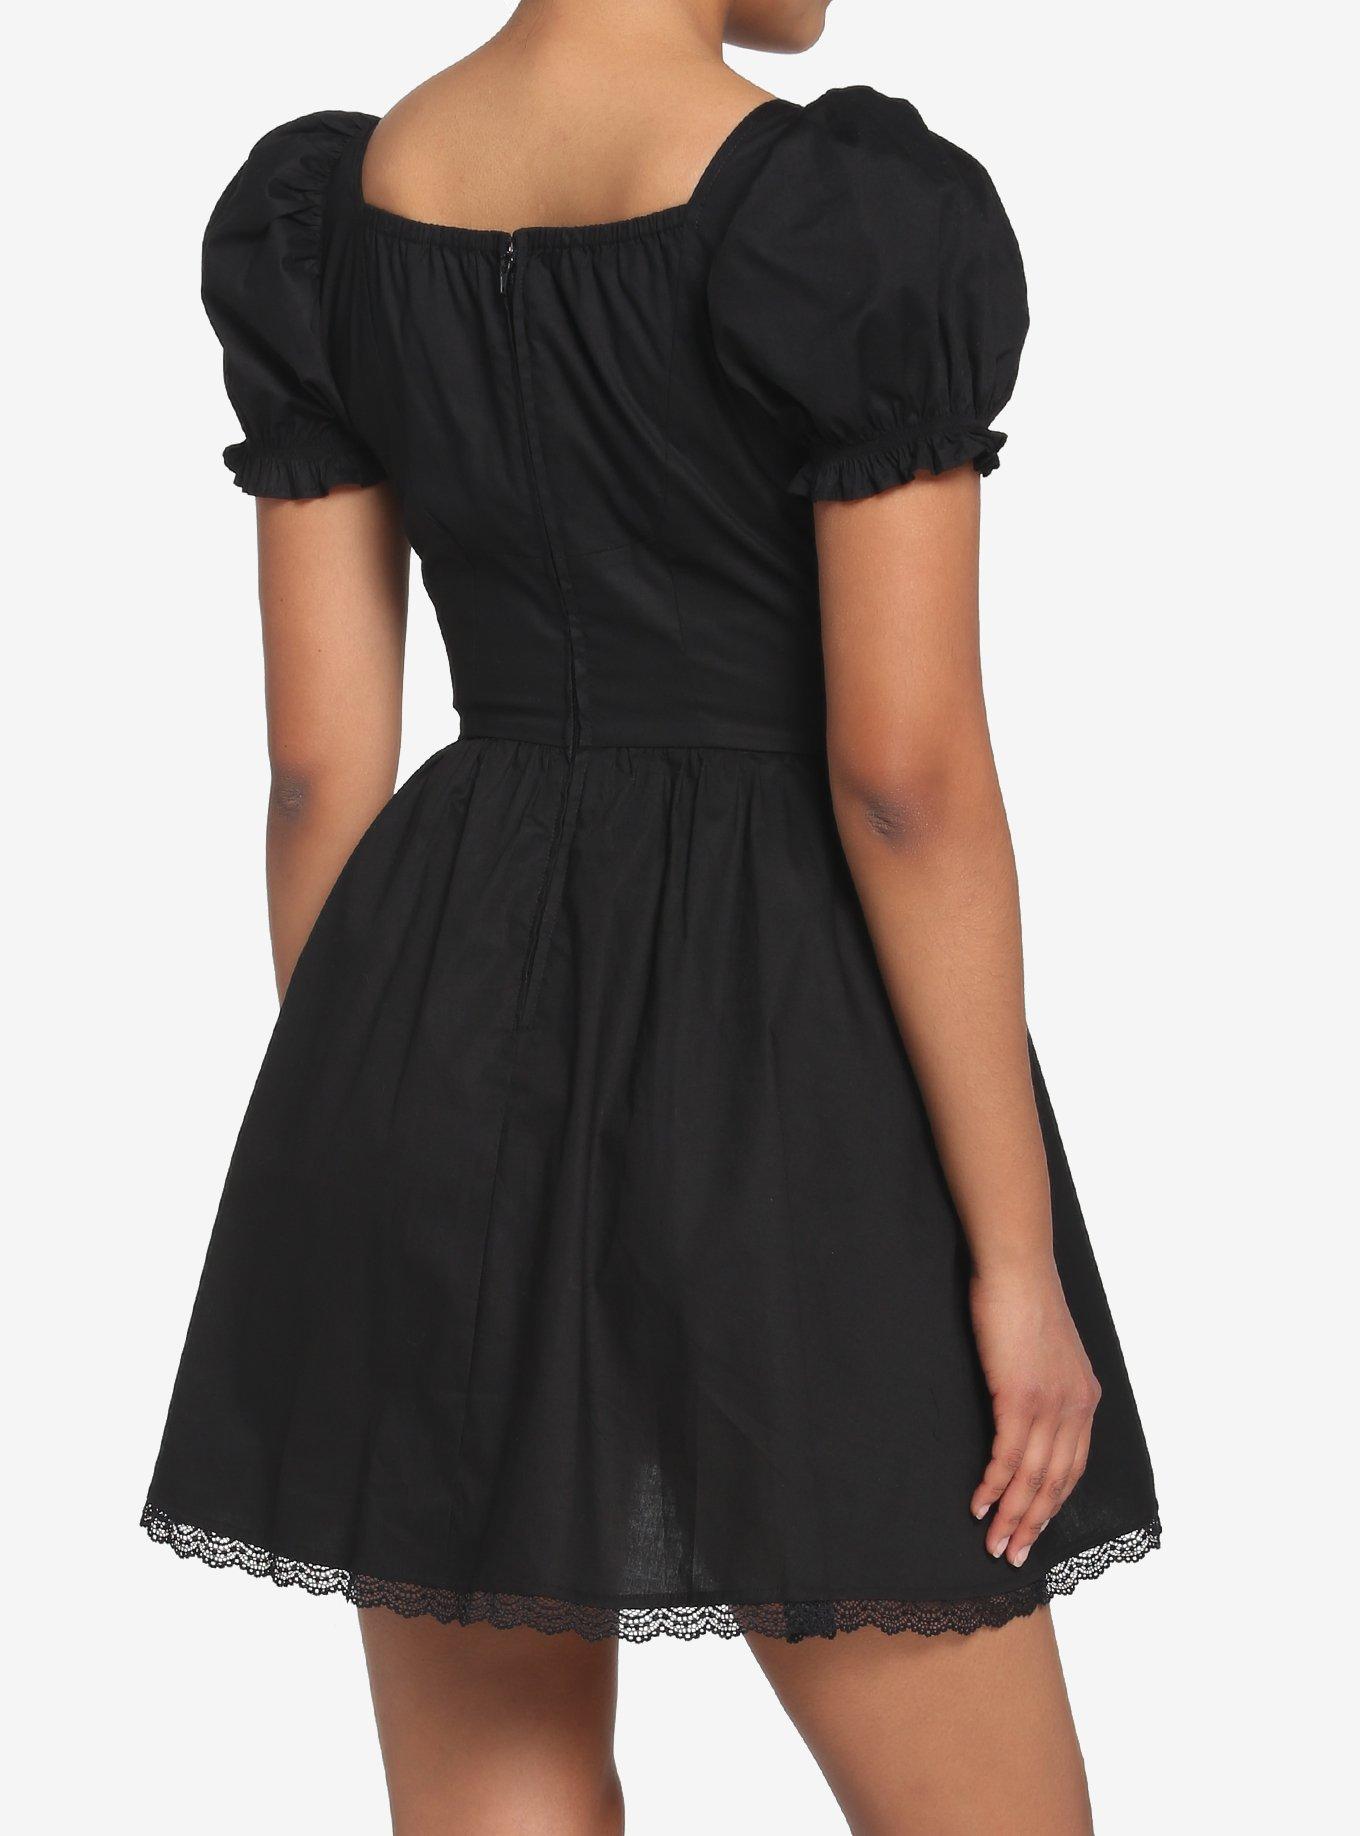 Black Corset Grommet Dress, BLACK, alternate